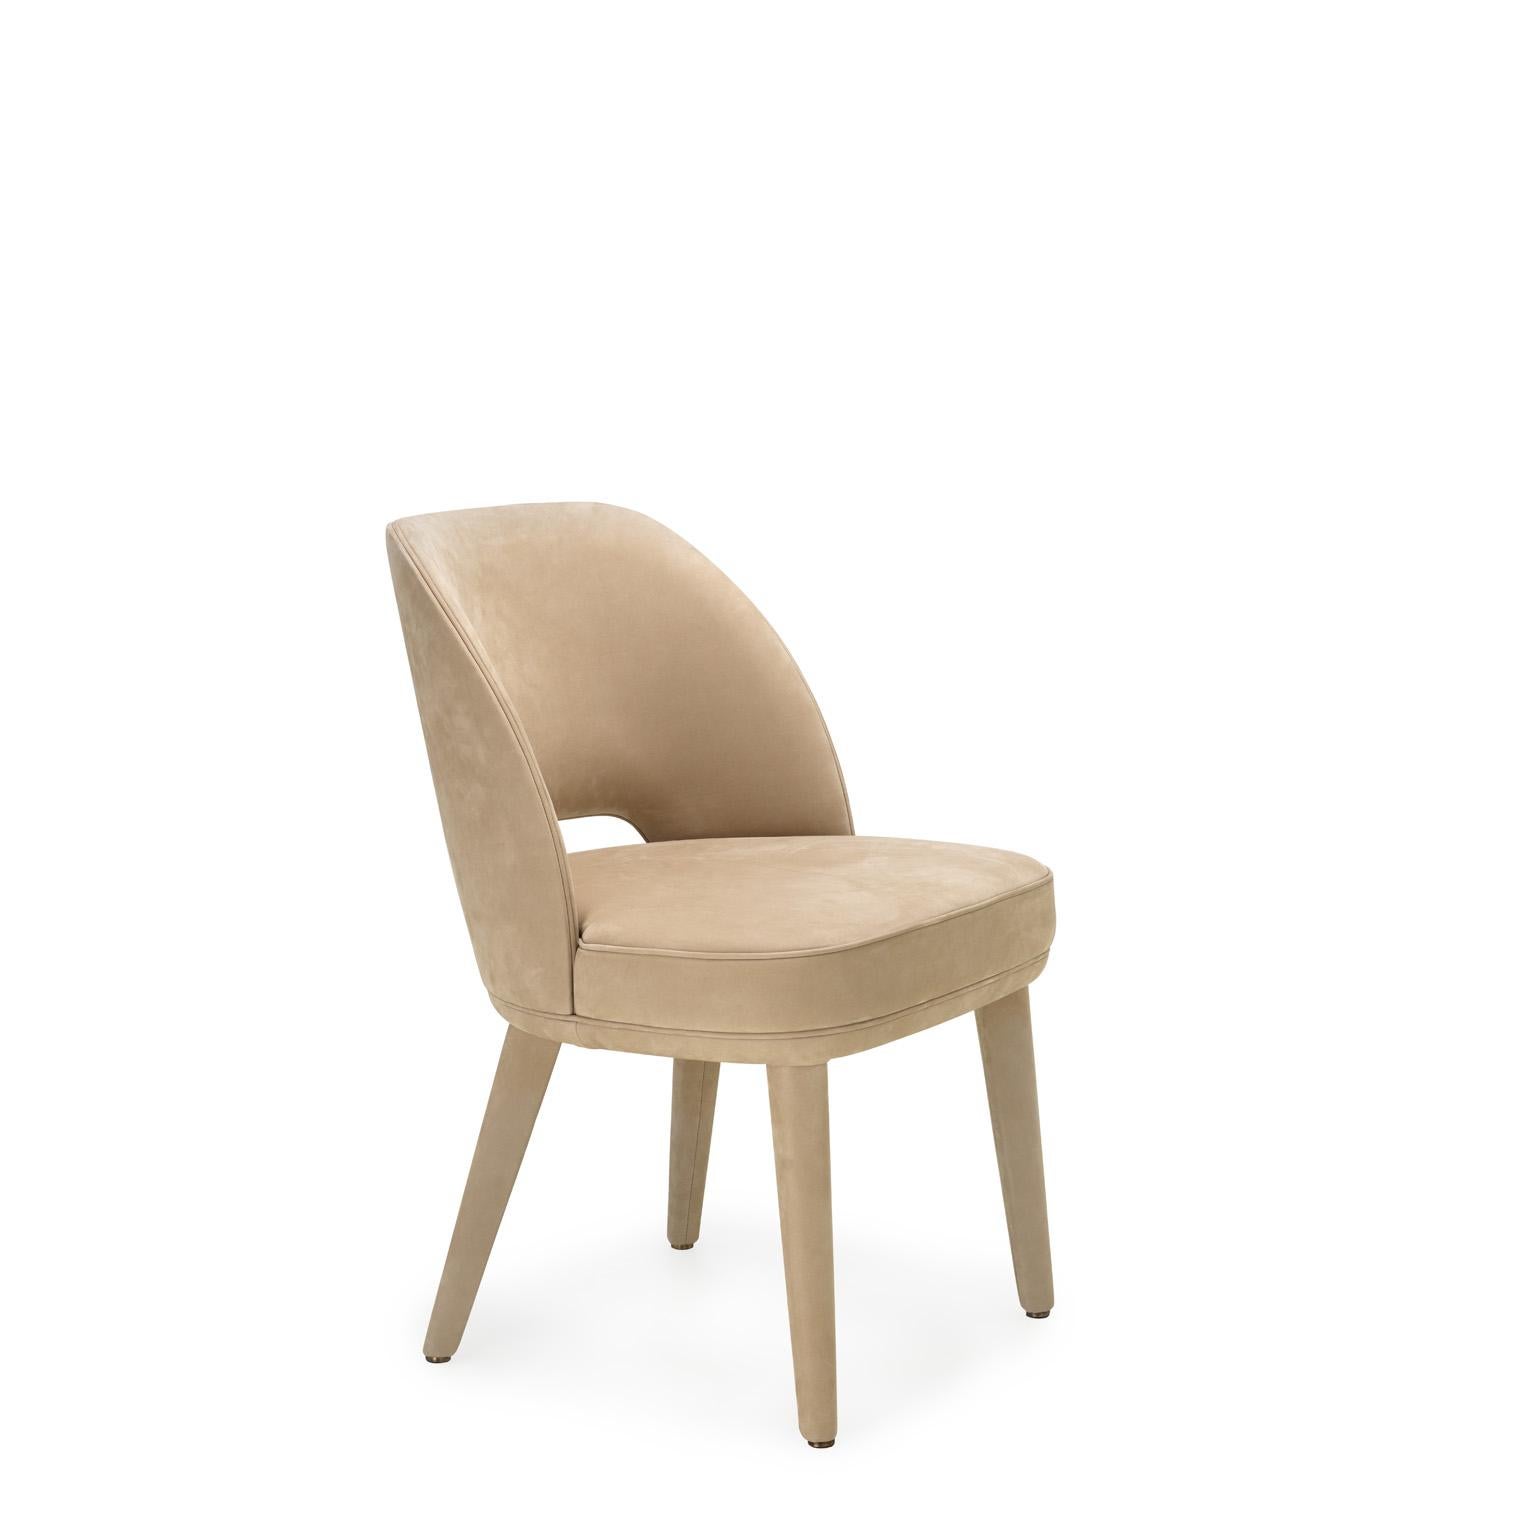 Penelope ist ein gepolsterter Stuhl mit weichen Volumen und einladenden Formen. Die fließenden Linien der Rückenlehne und die Leichtigkeit der Beine werden durch den Bezug aus Leder Carmen (Kat. L), der in der eleganten Farbe Conchiglia angeboten